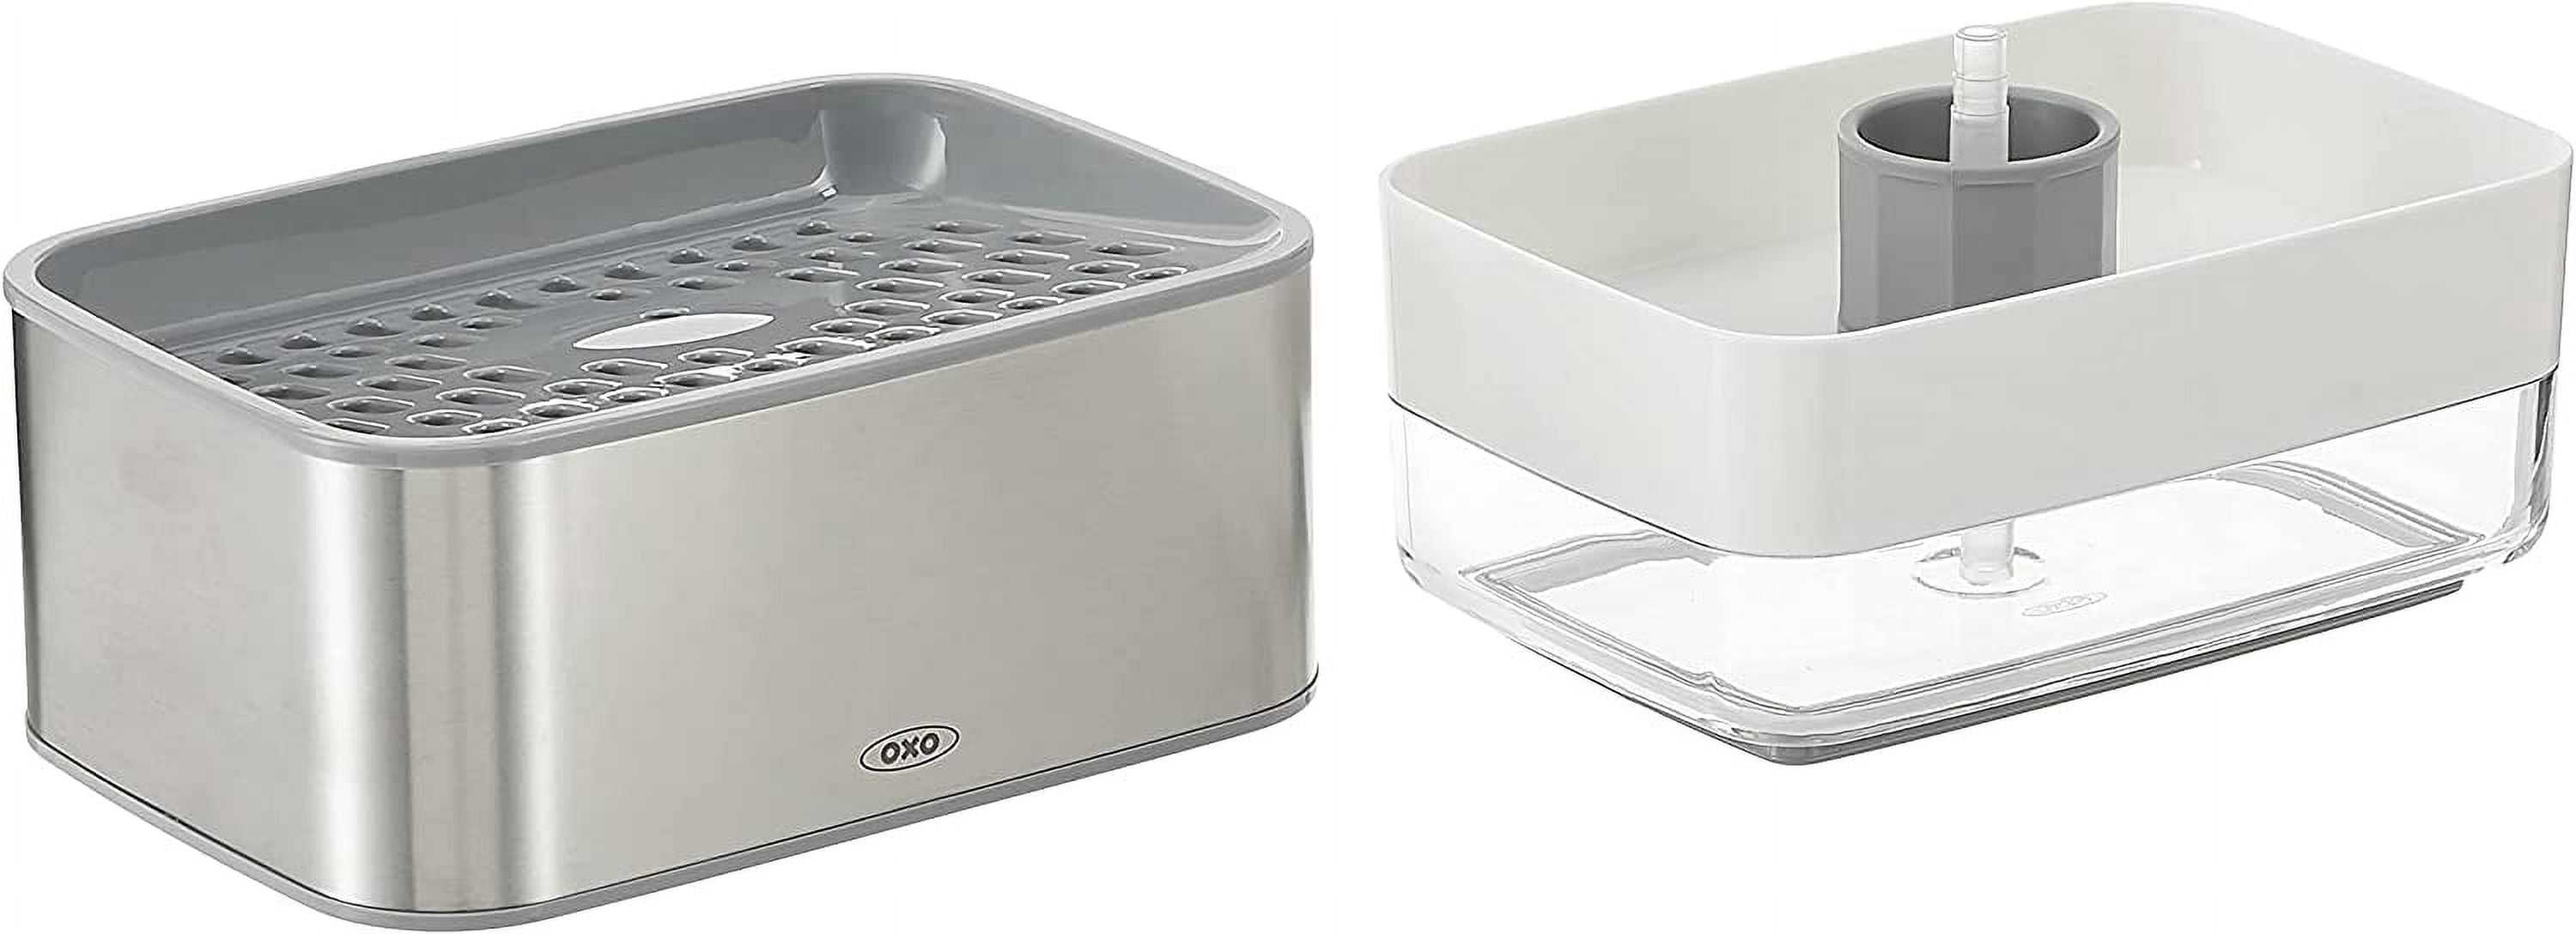 OXO Good Grips Stainless Steel Soap Dispenser